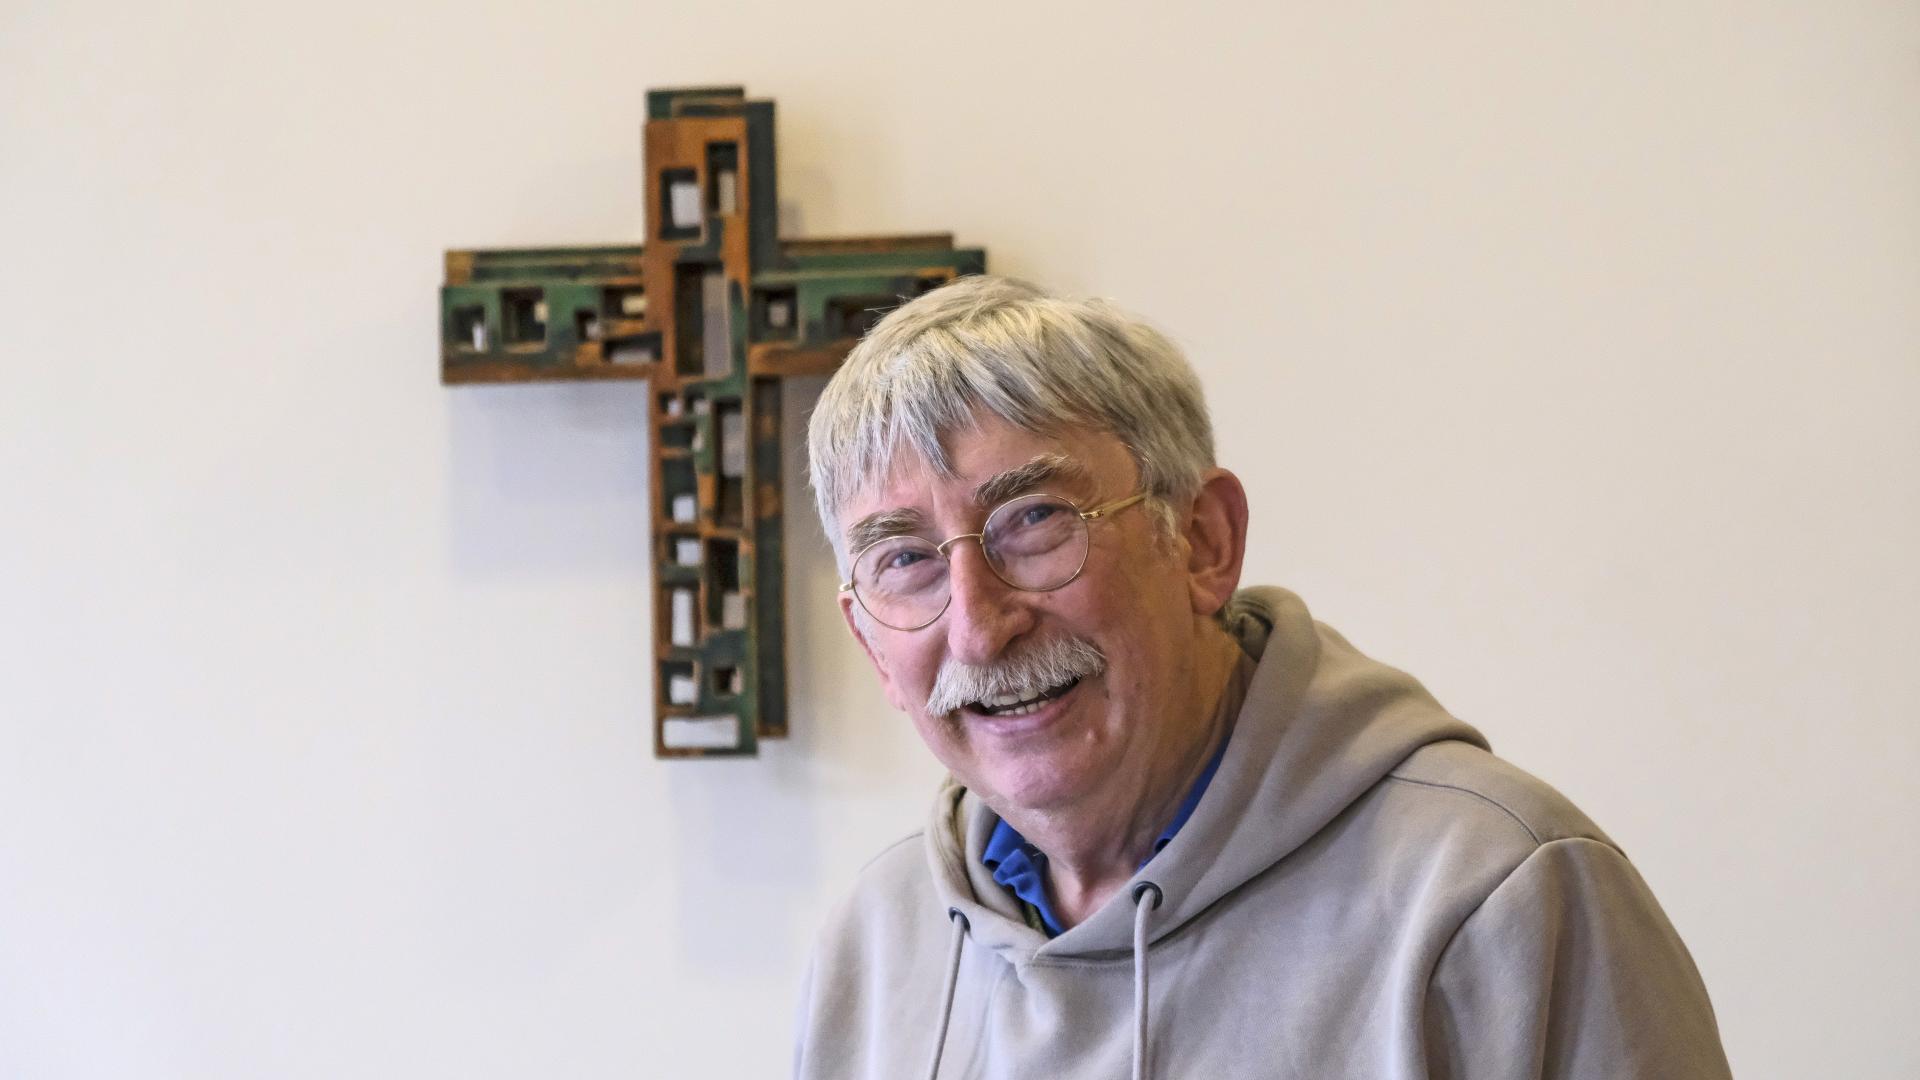 Porträtfoto eines Mannes, der vor einem Kreuz sitzt